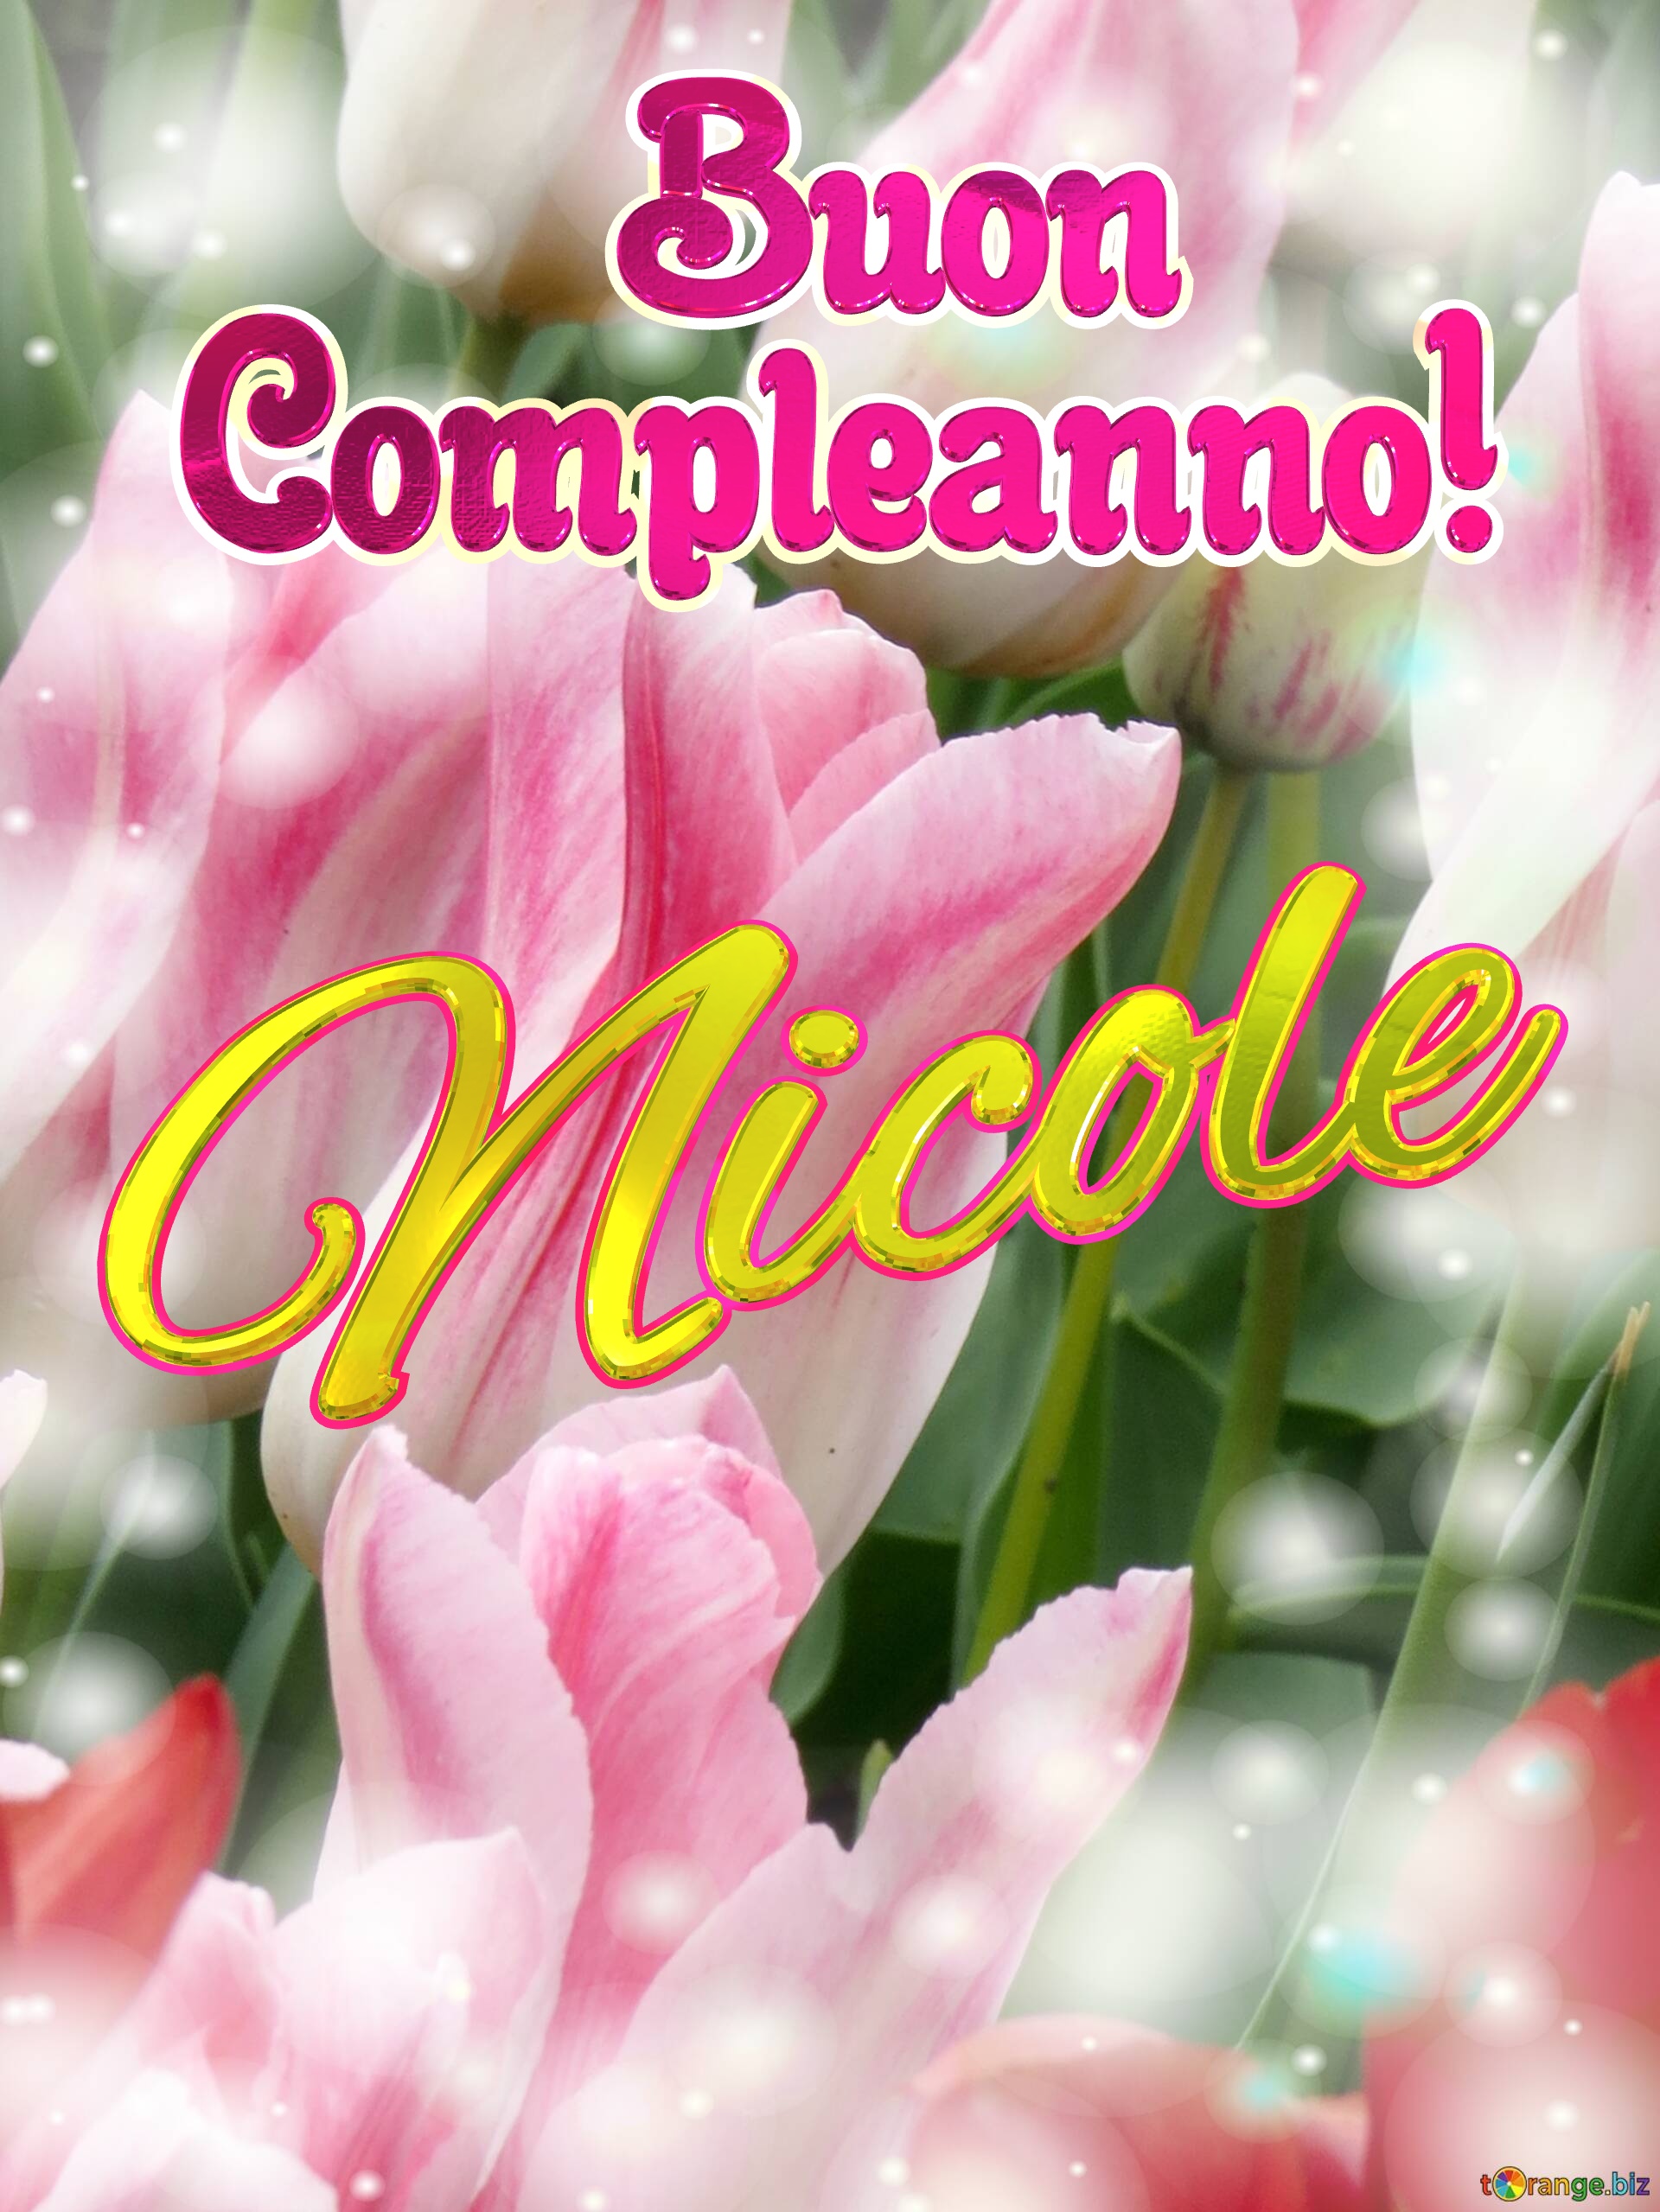       Buon  Compleanno! Nicole  Buona primavera, che questi tulipani ti portino la speranza e la felicità. №0